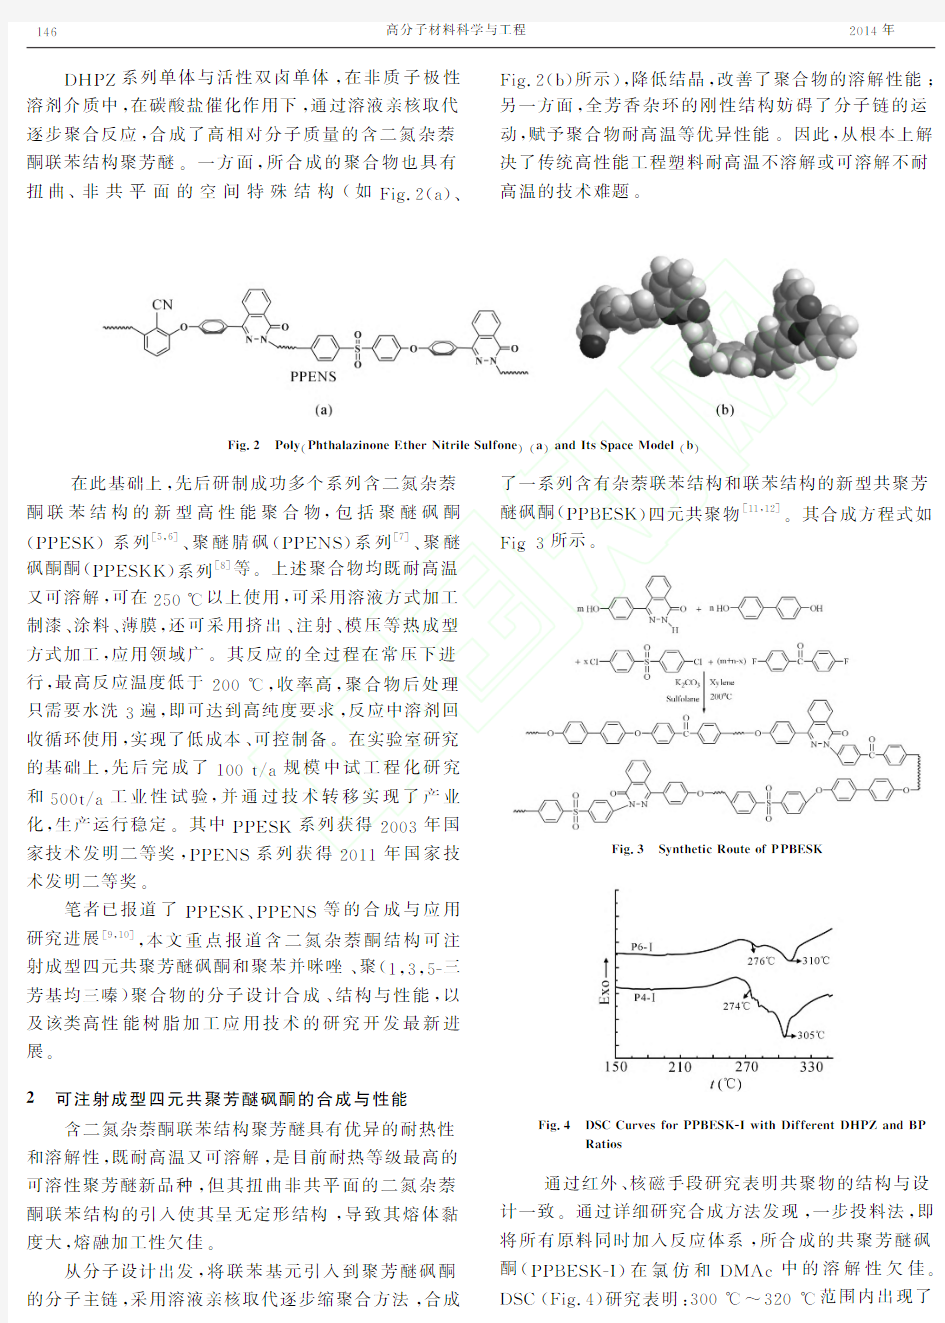 氮杂环高性能树脂研究进展_王锦艳